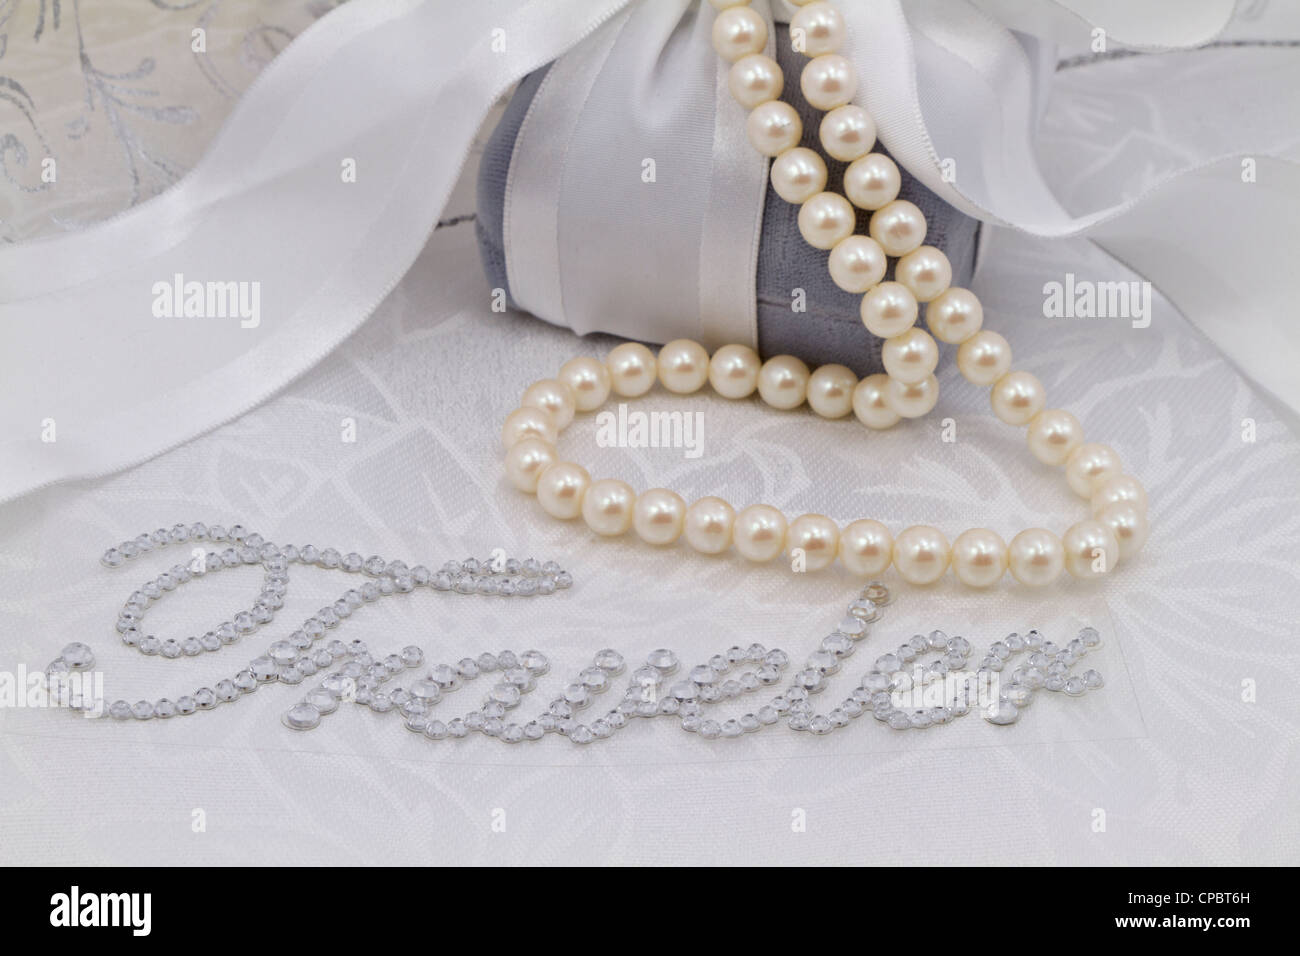 Immagine femminile con la parola "Traveler" in finti diamanti immessi sul damasco bianco e circondato da perle, velluto confezione regalo. Foto Stock